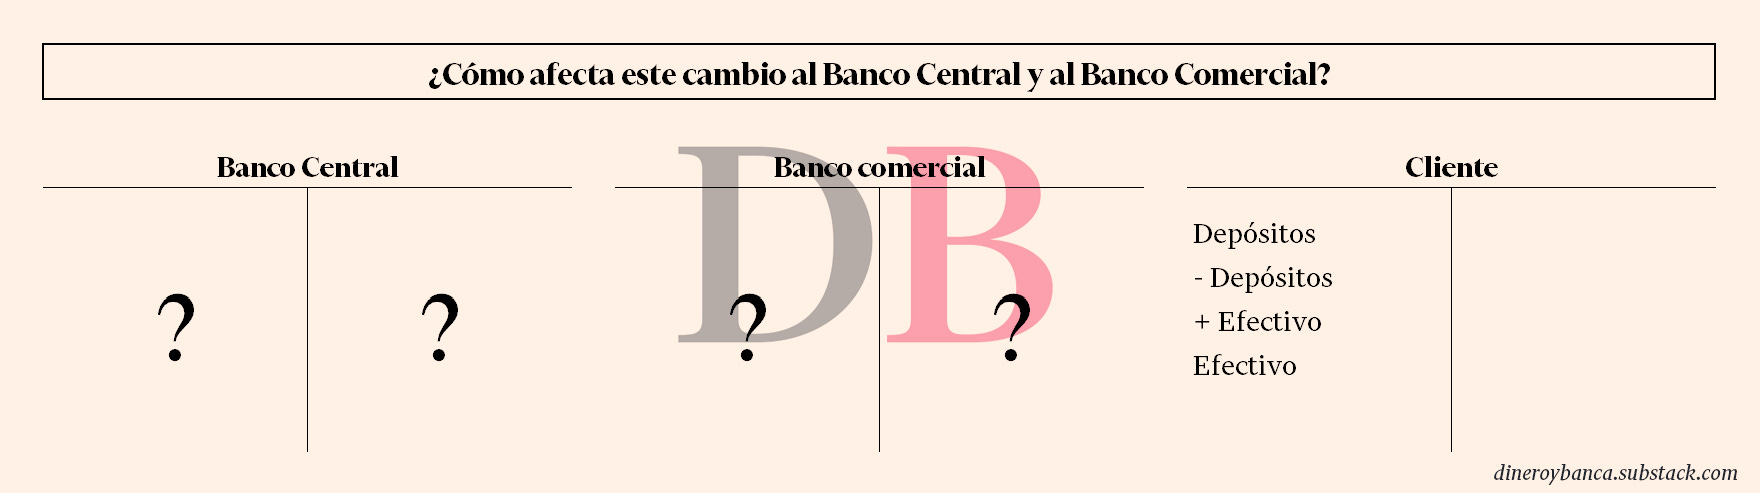 ¿Cómo afecta este cambio a los balances del banco central y del banco comercial?